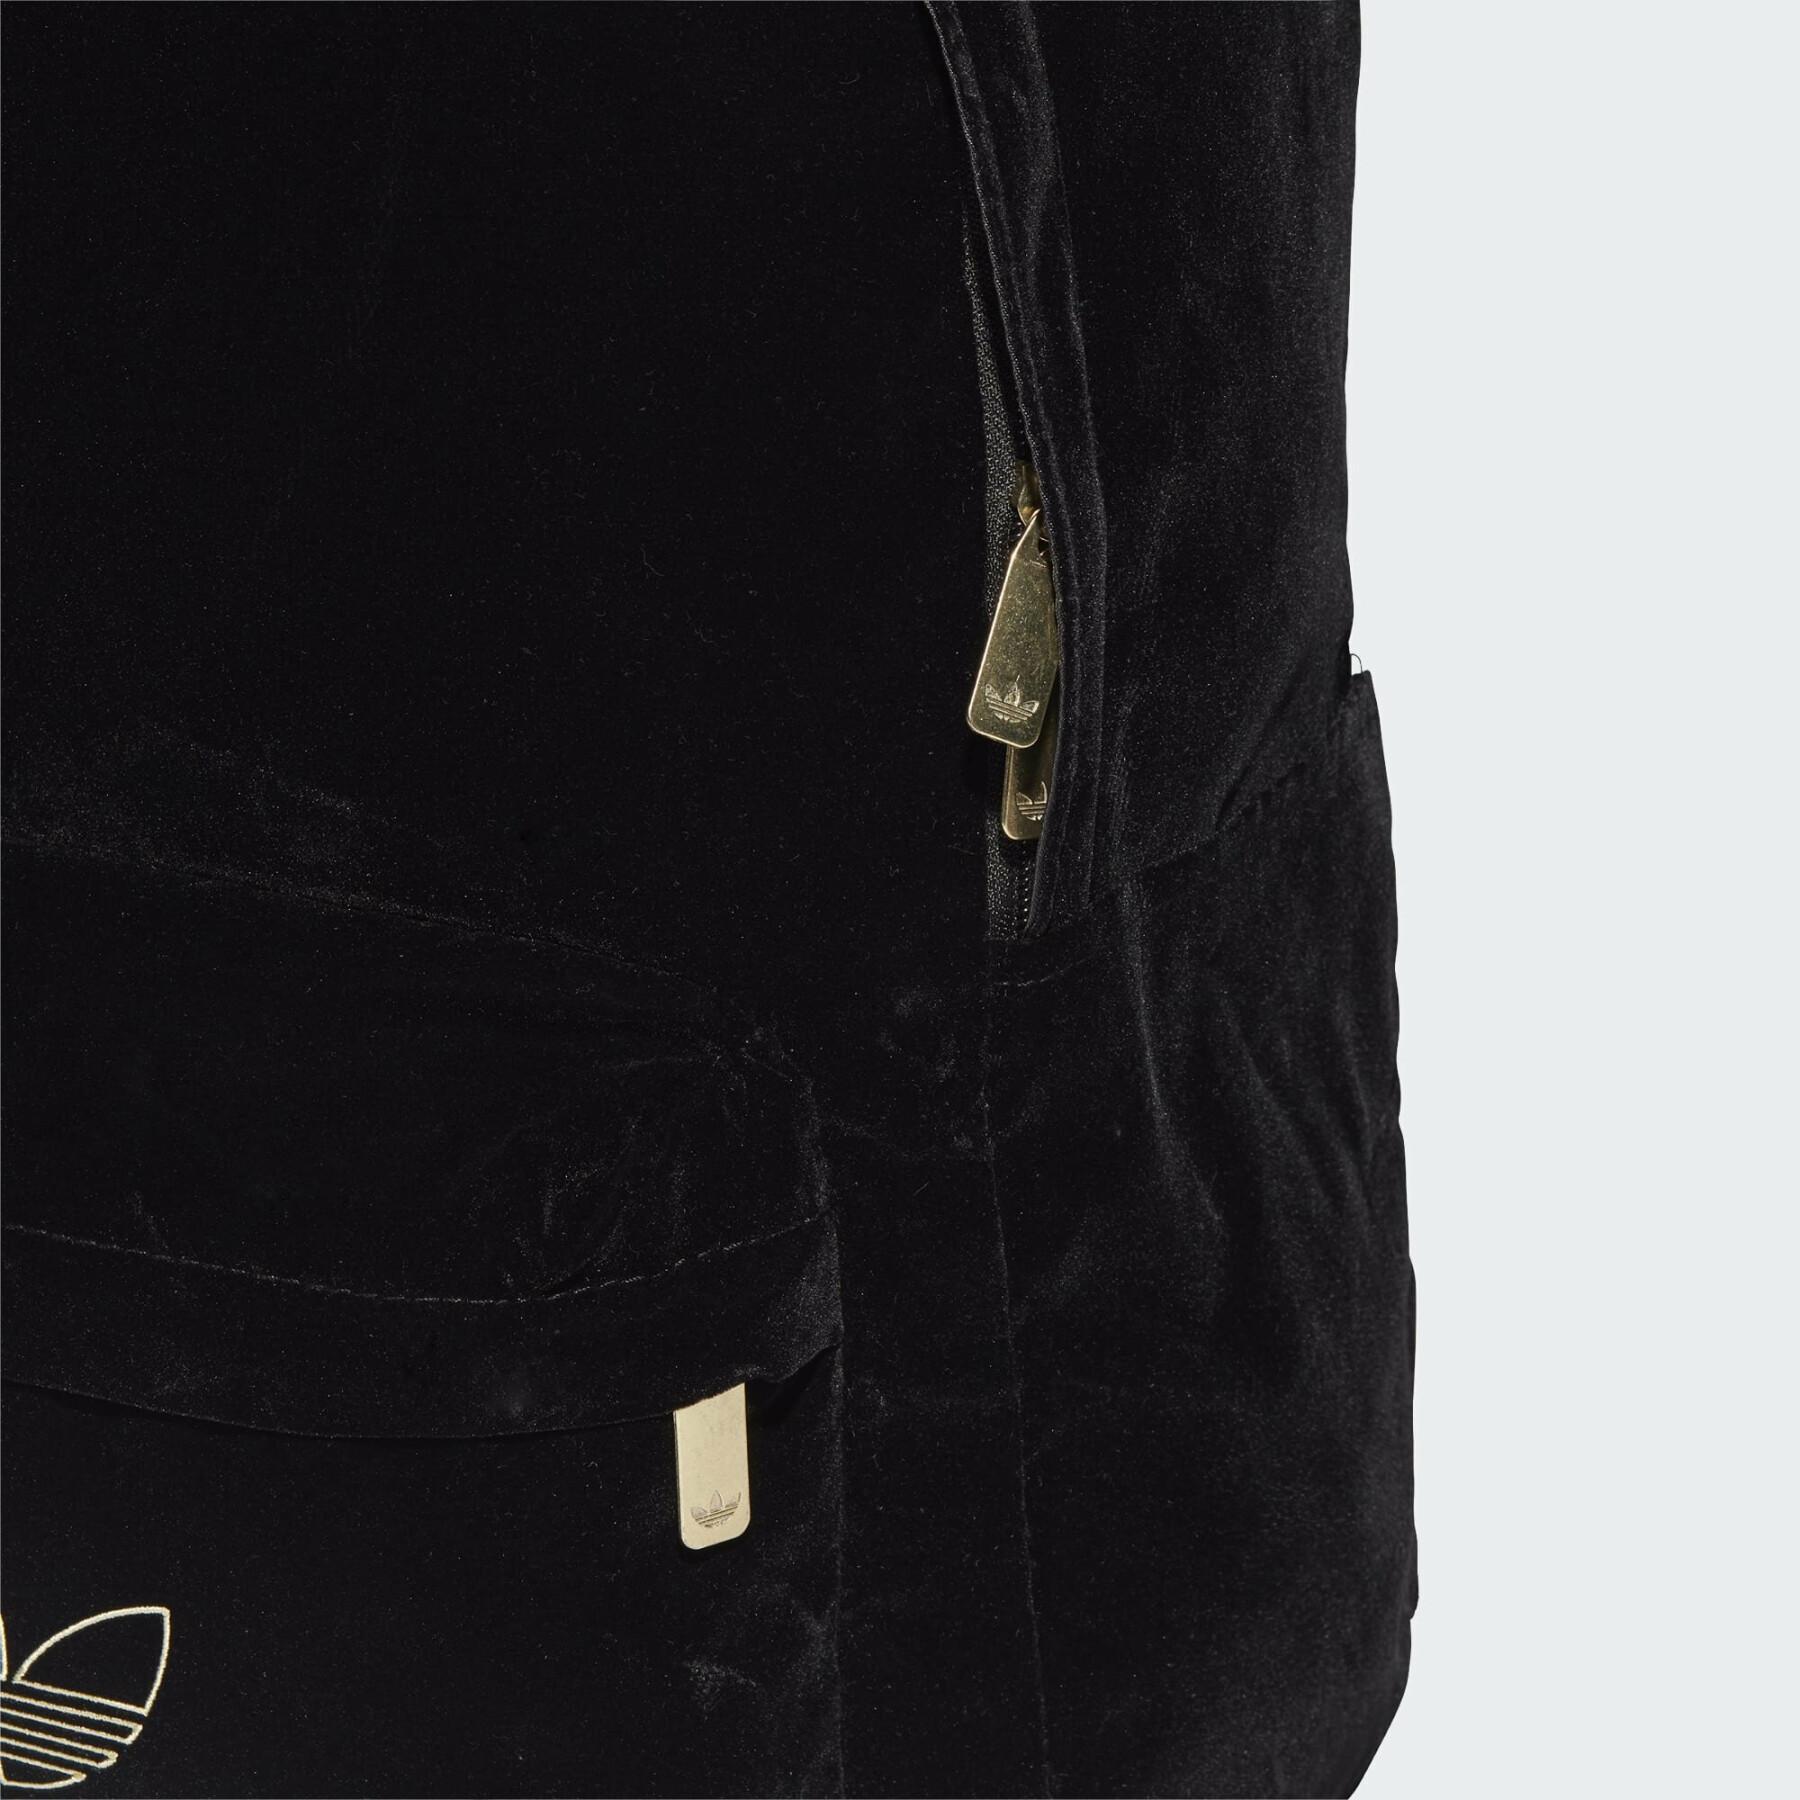 Backpack Adidas adicolor velvet